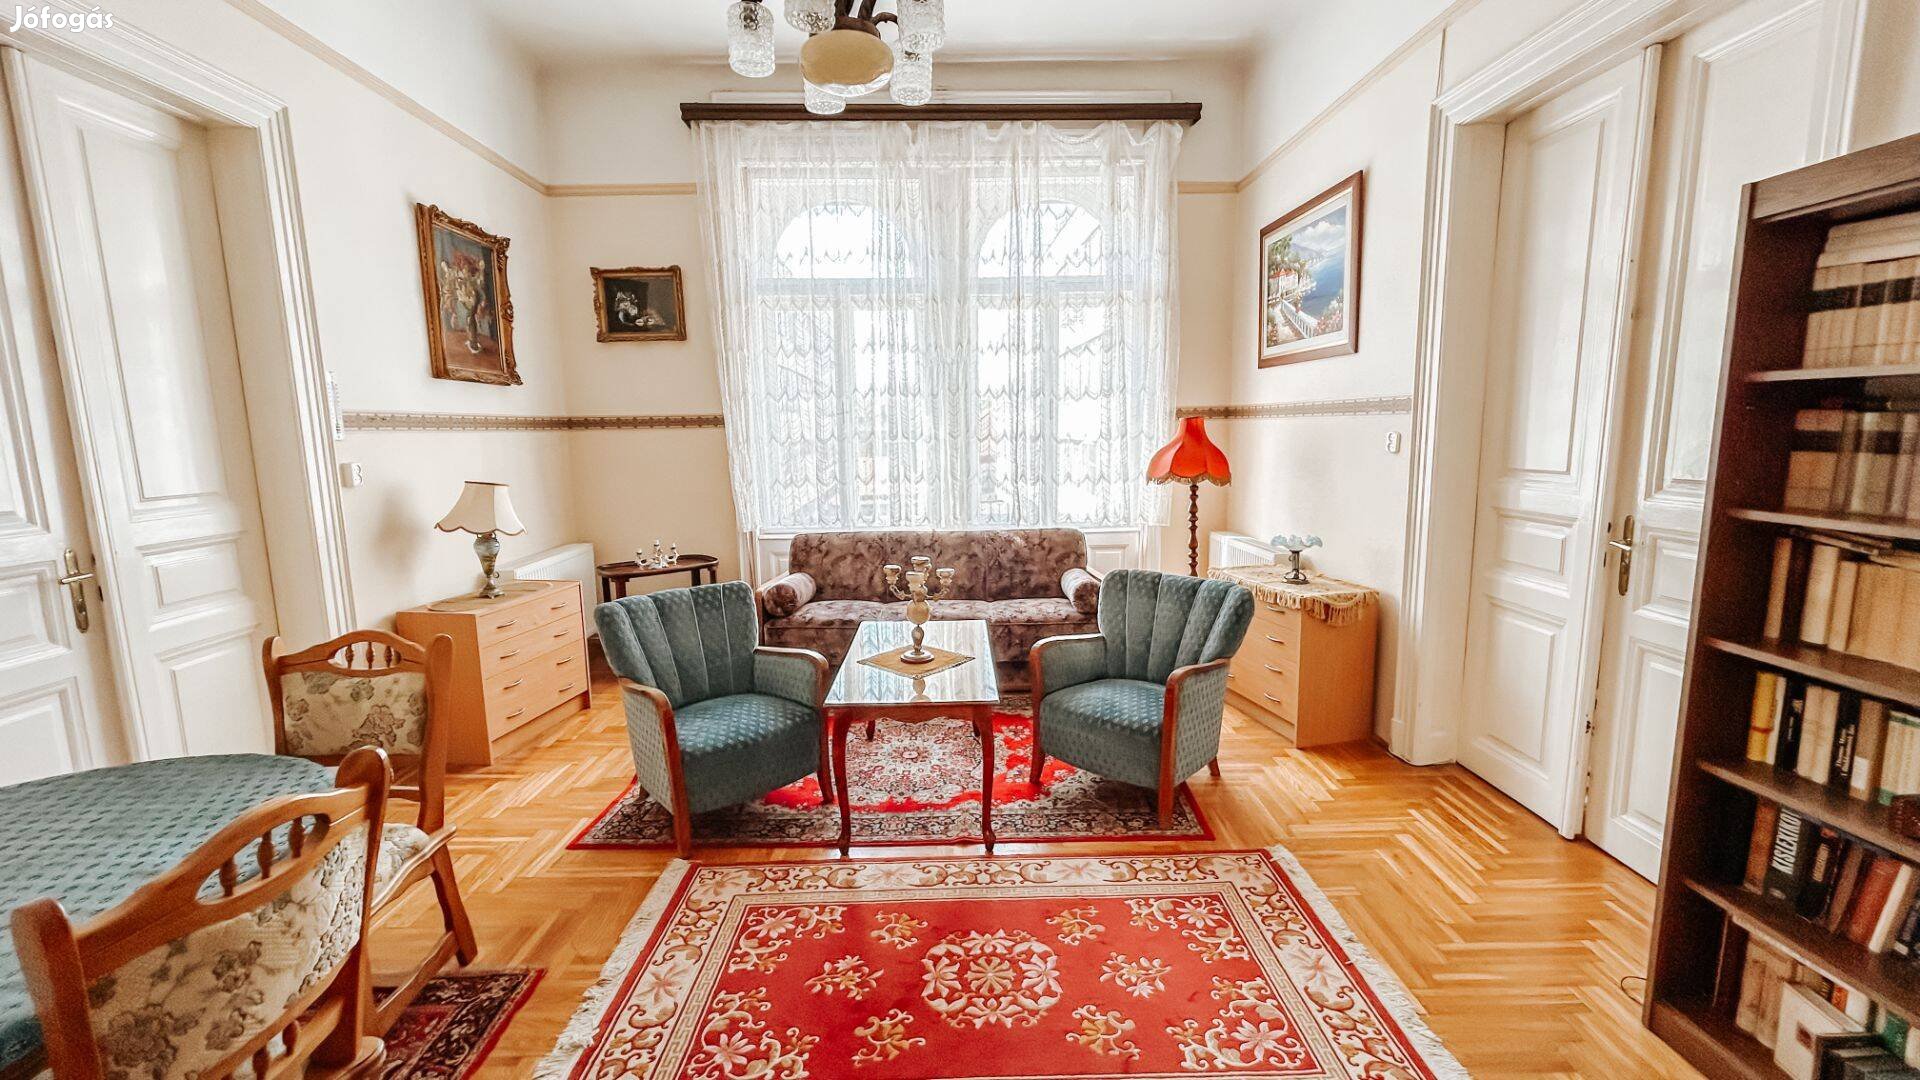 Eladó lakás a 7. kerületben, airbnb megengedett a házban